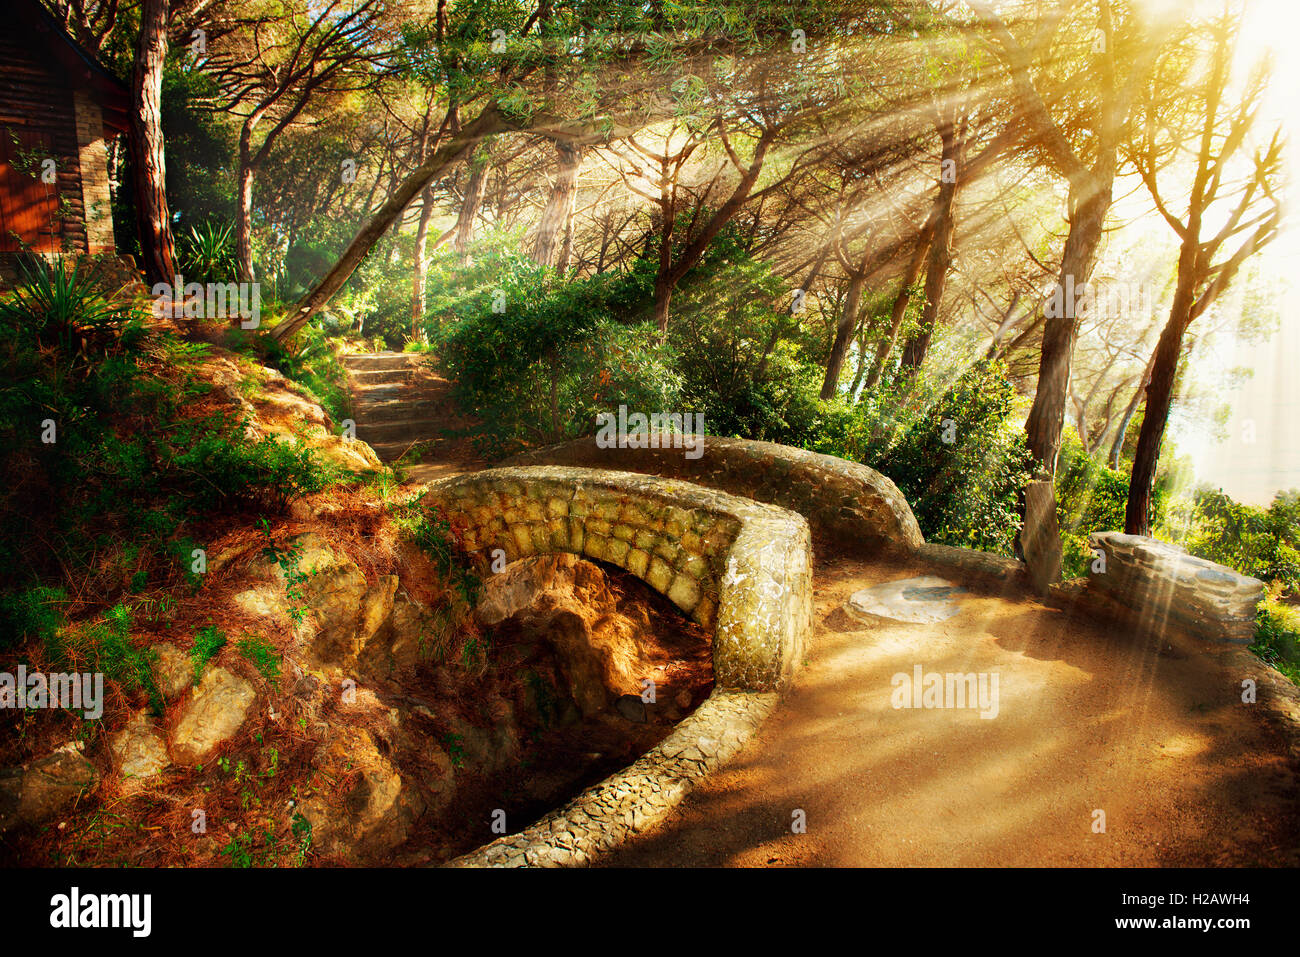 Parco mistico. Alberi secolari e antico ponte in pietra. Il percorso Foto Stock